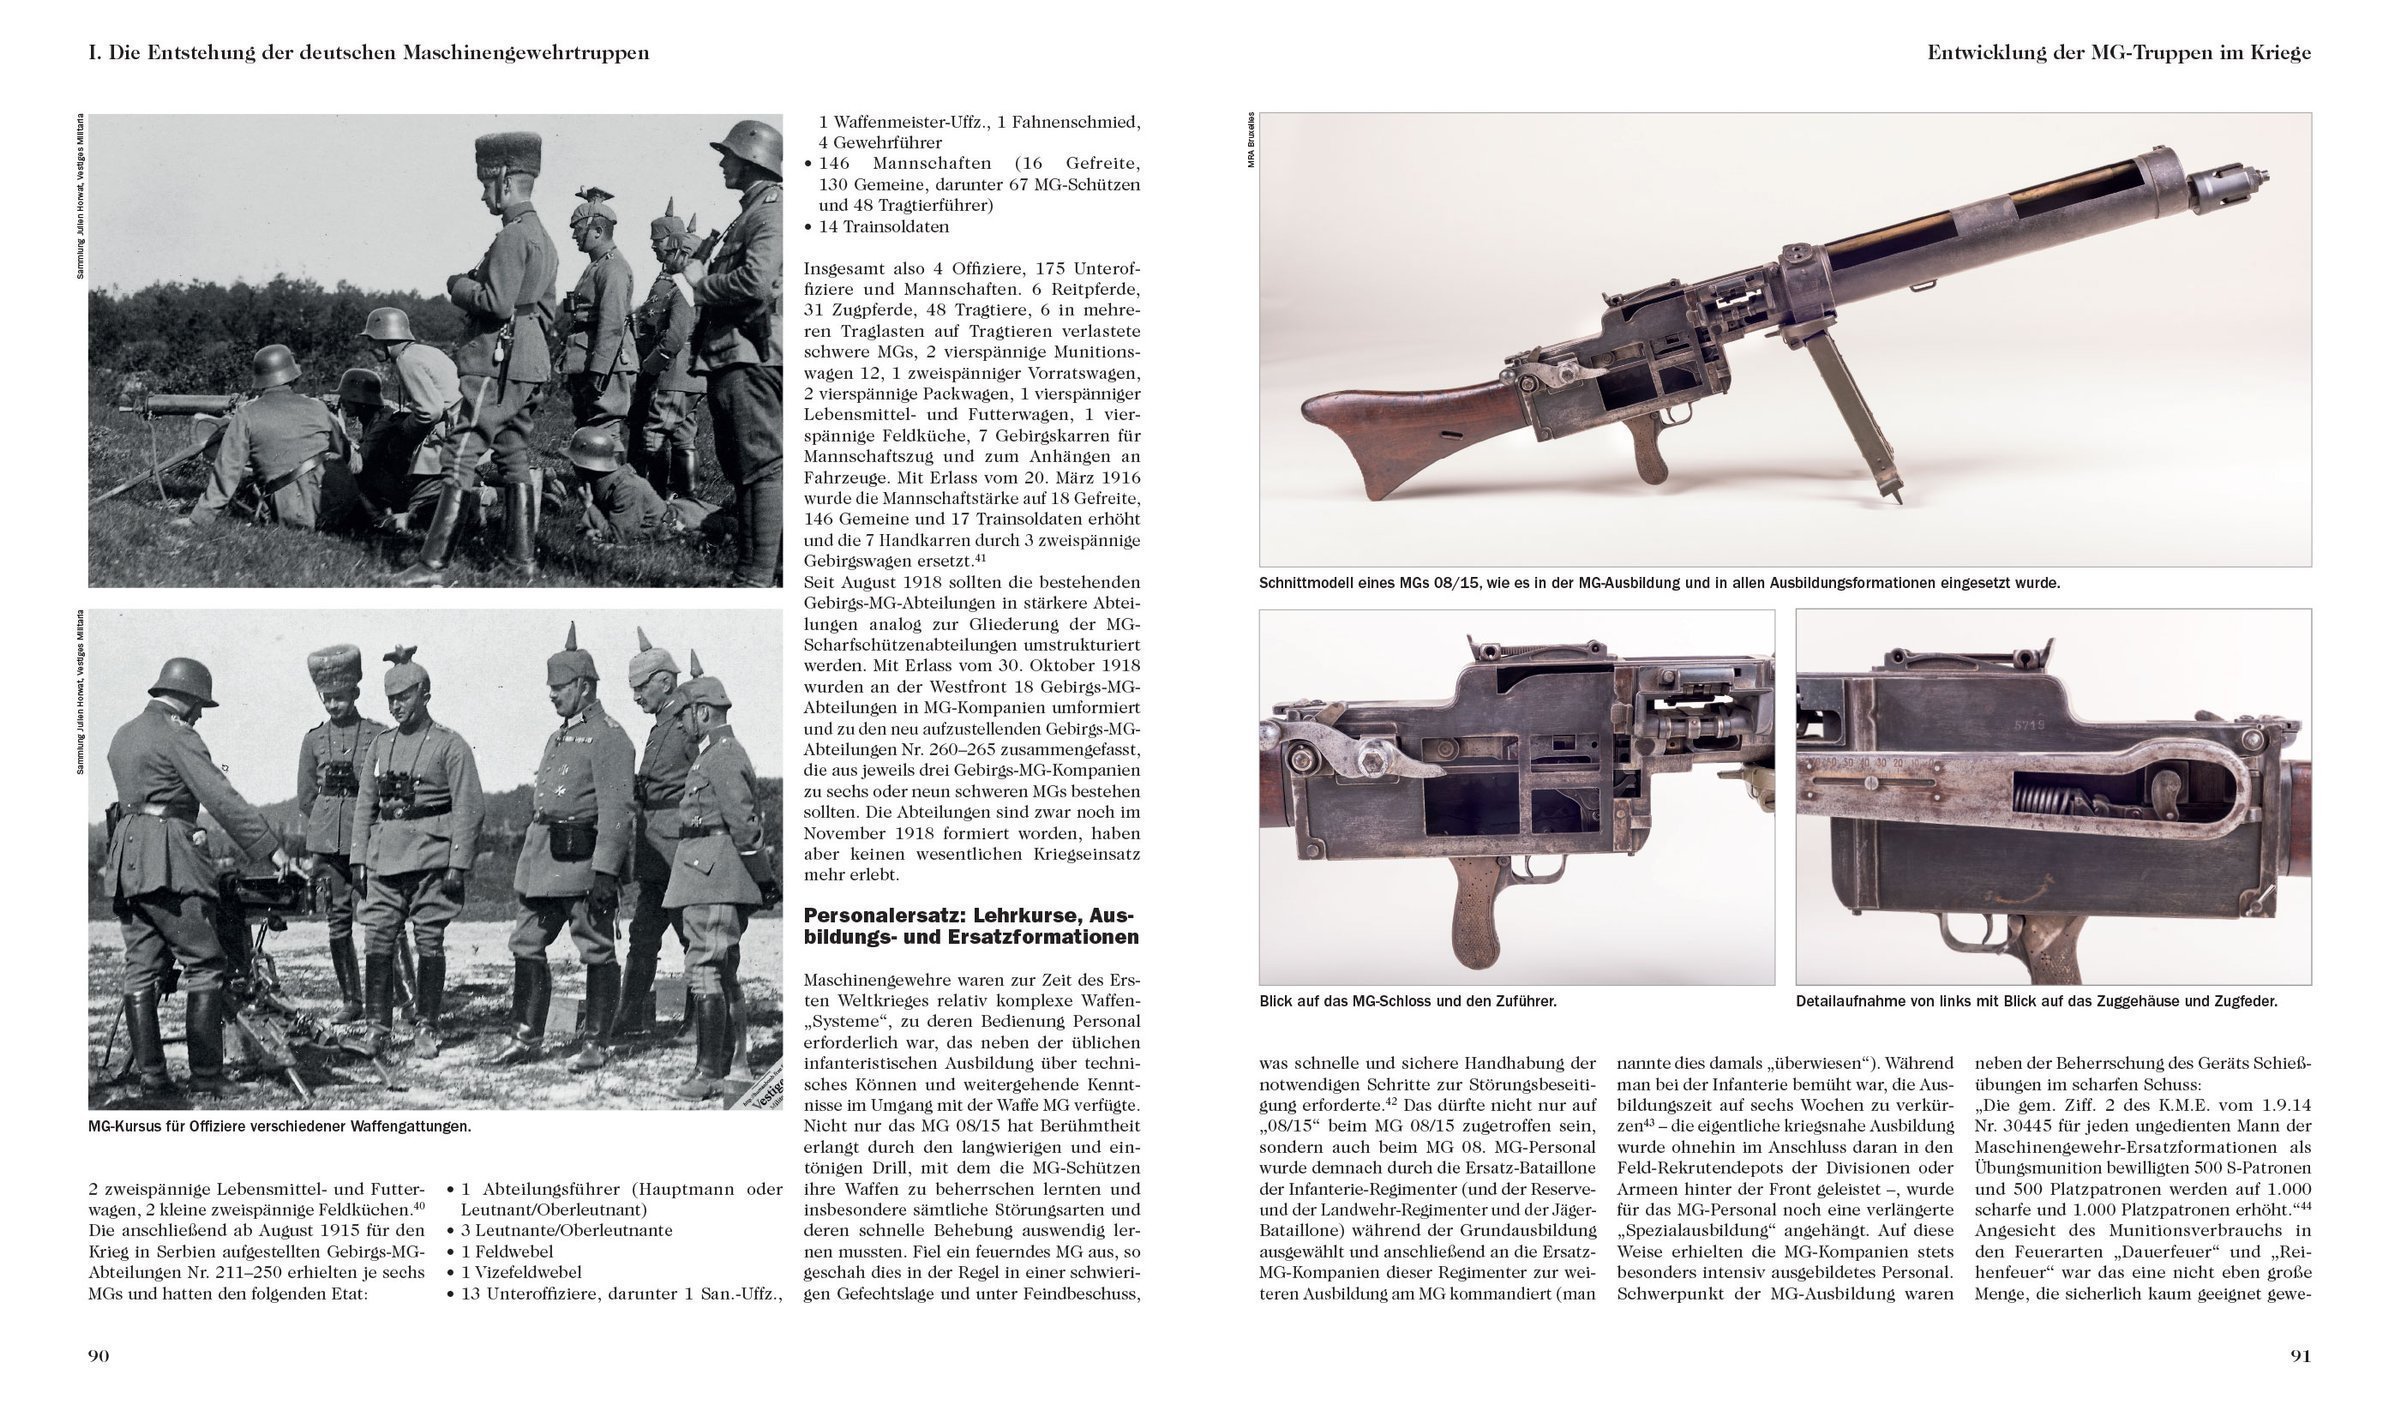 Buchholz/Brüggen Vorschriften für deutsche Maschinengewehre